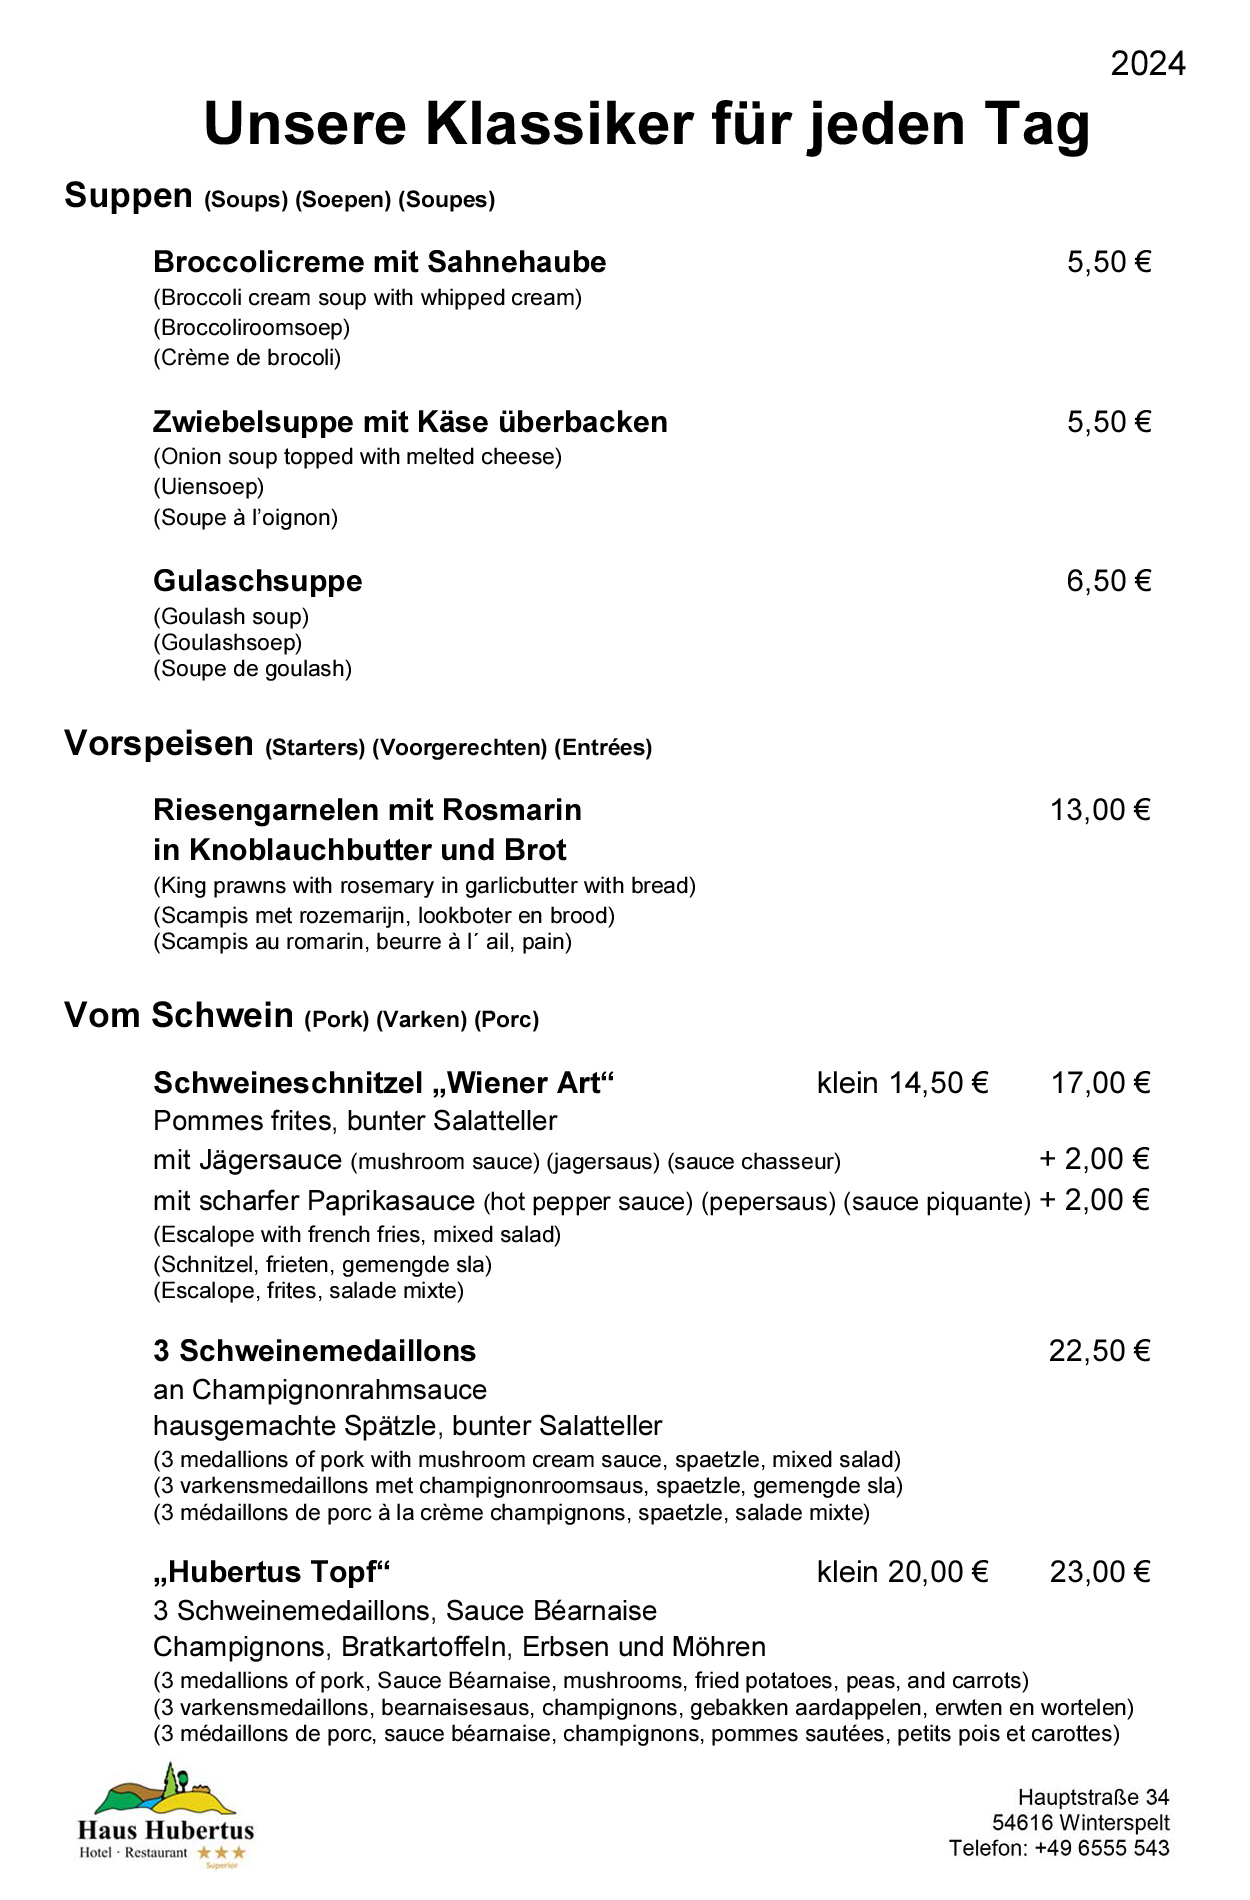 Hotel - Restaurant Haus Hubertus - Speisekarte 01/2024 - Die Klassiker - Seite 1